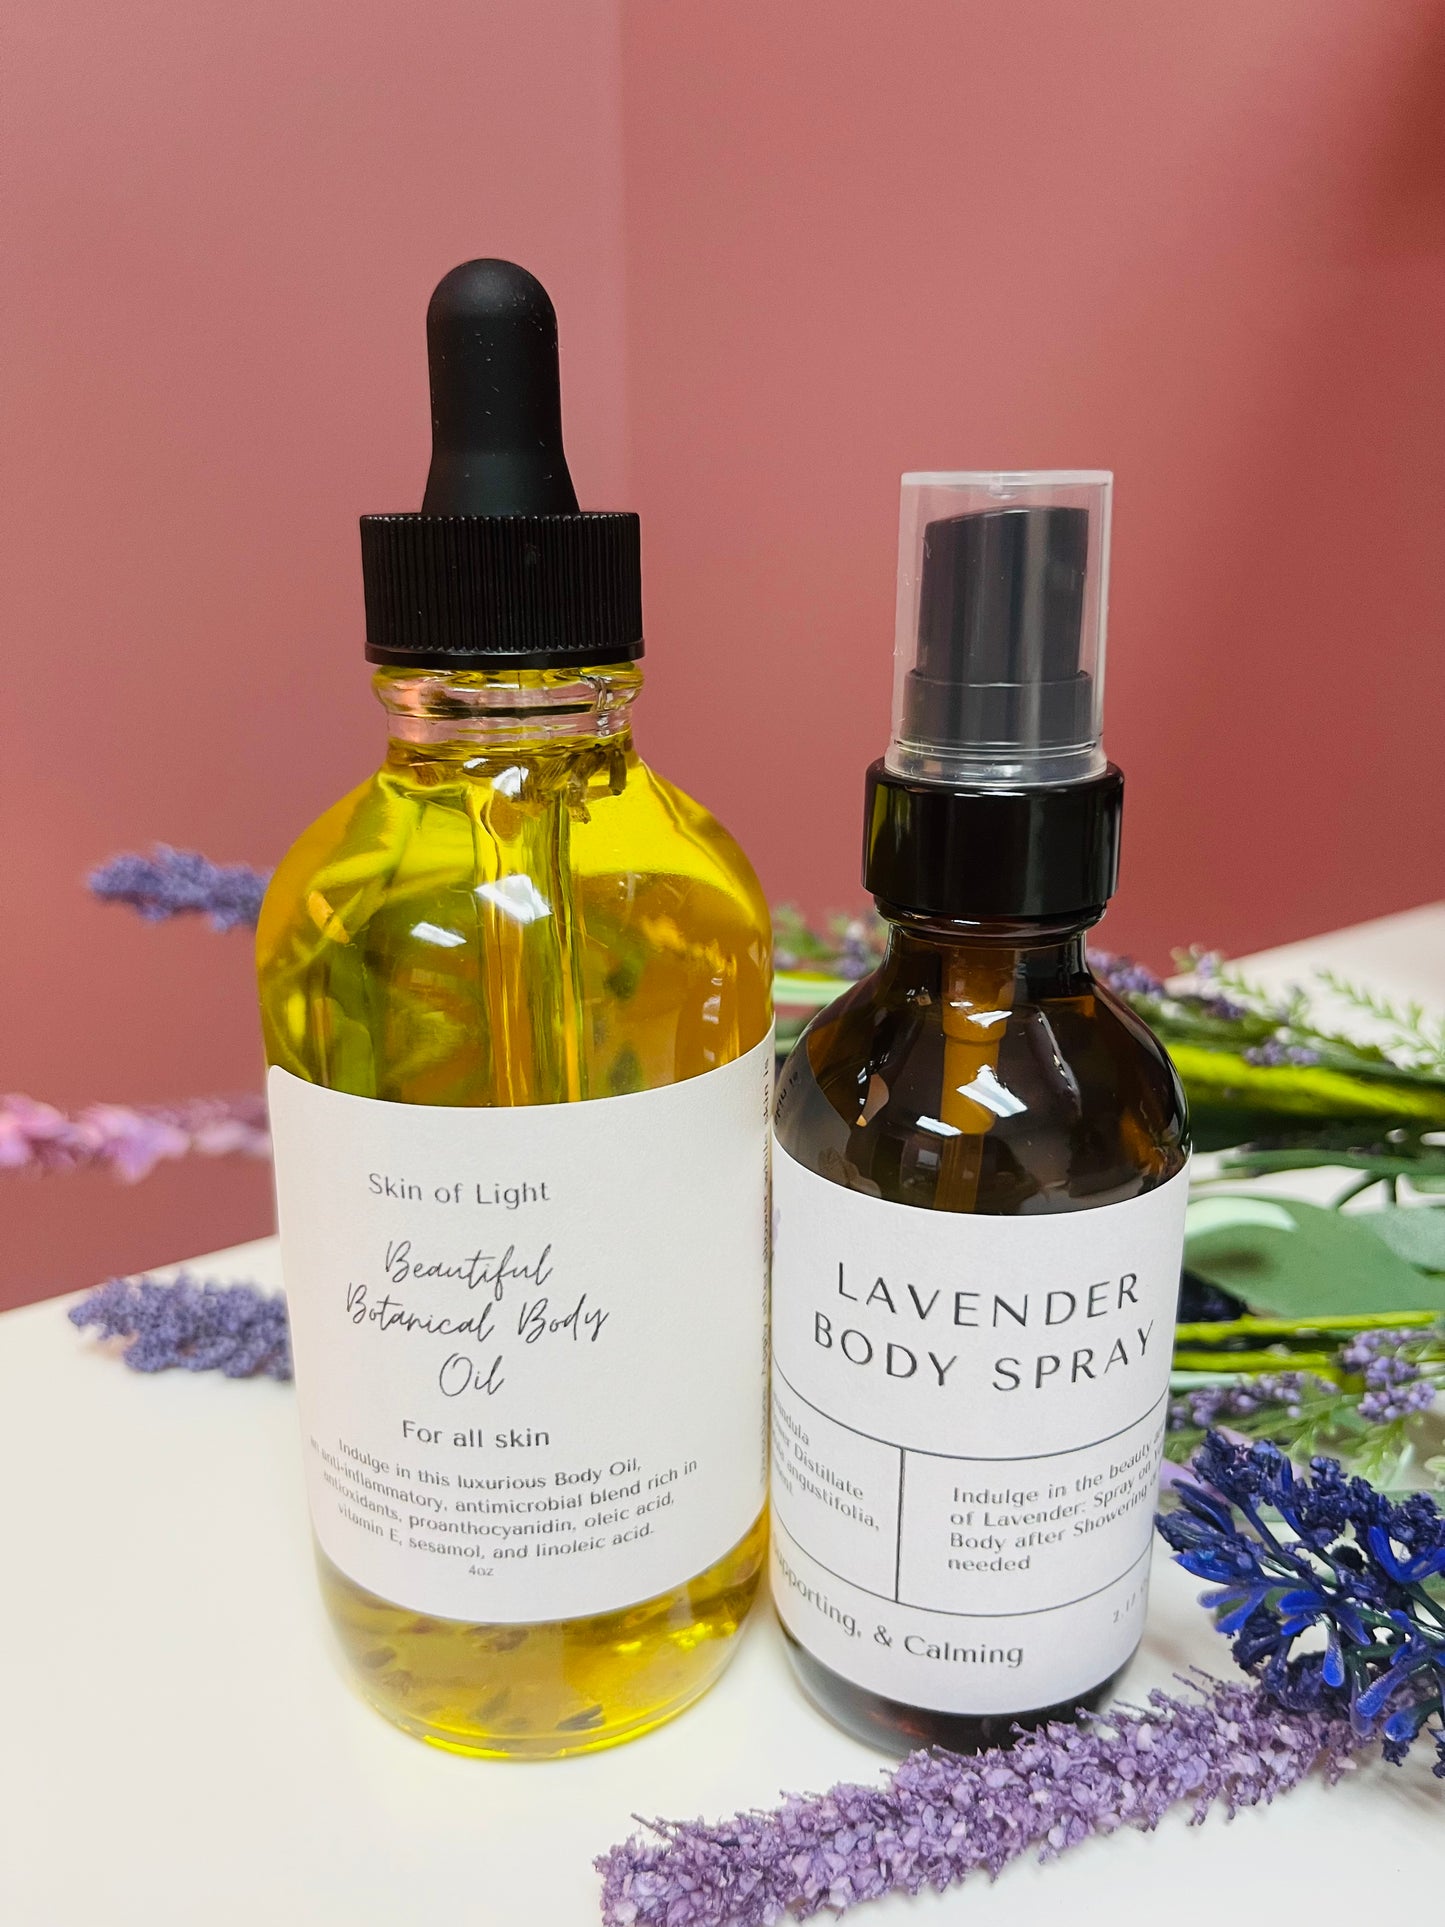 Botanical Body Oil + Lavender Body Spray - Skin of Light 